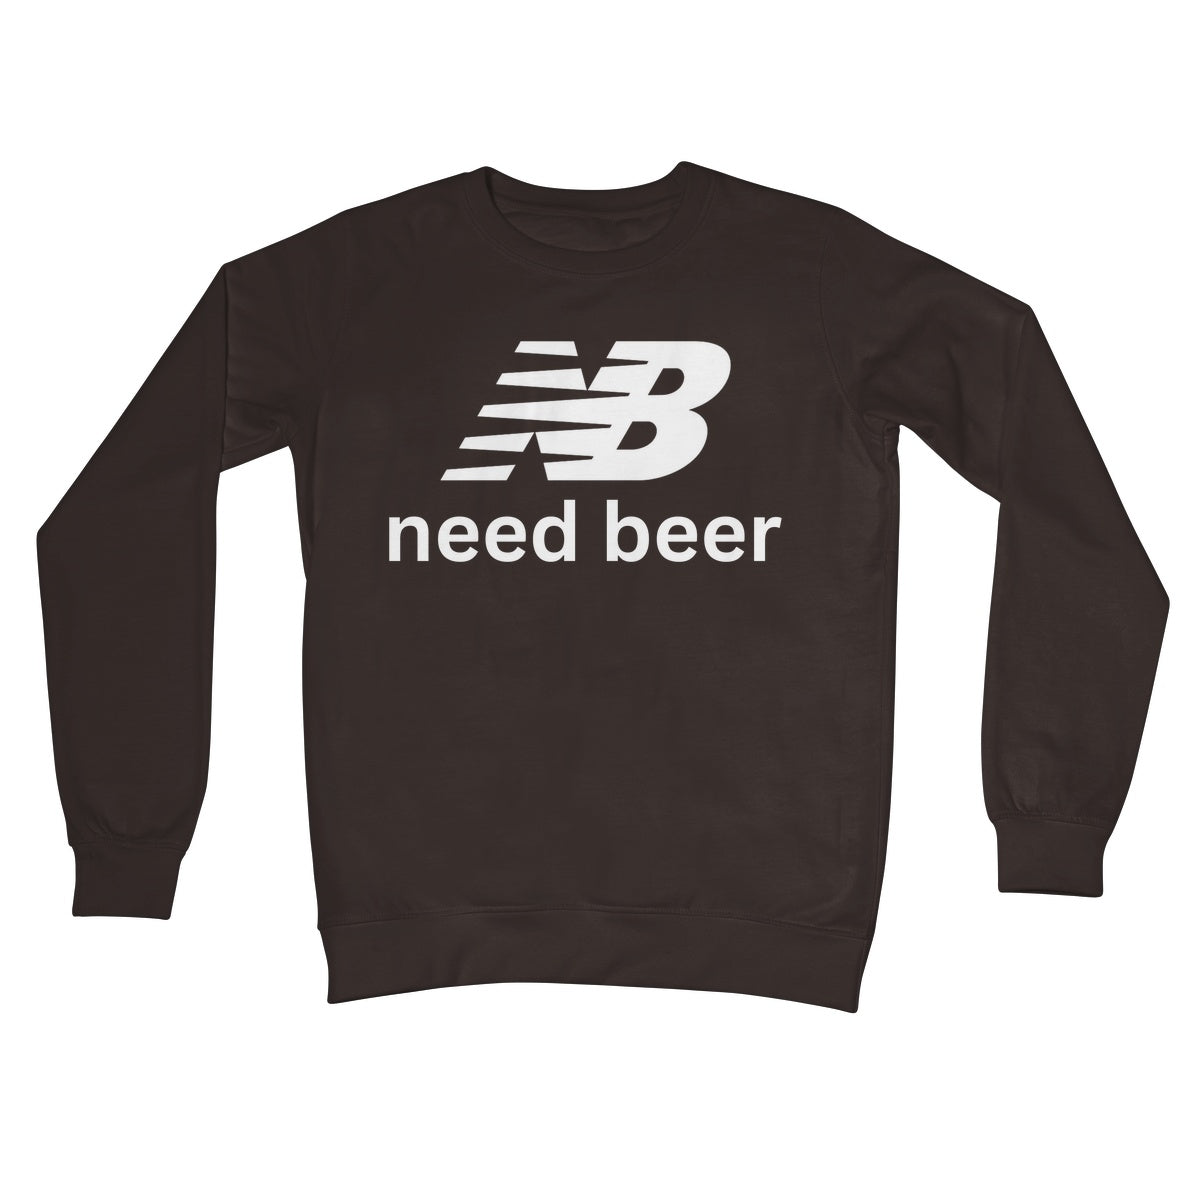 need beer jumper brown